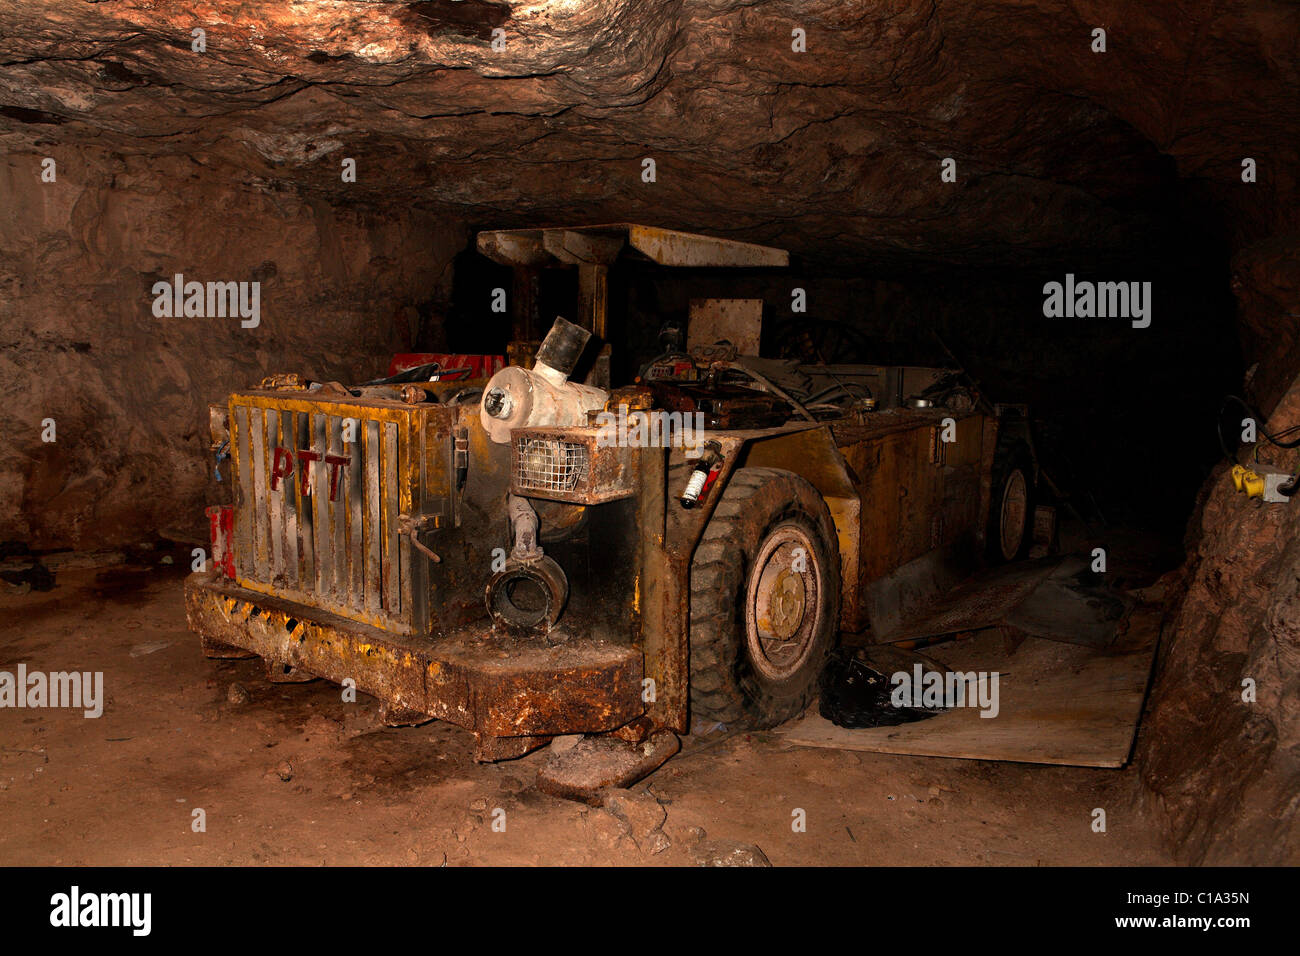 Équipements miniers abandonnés dans une mine Banque D'Images